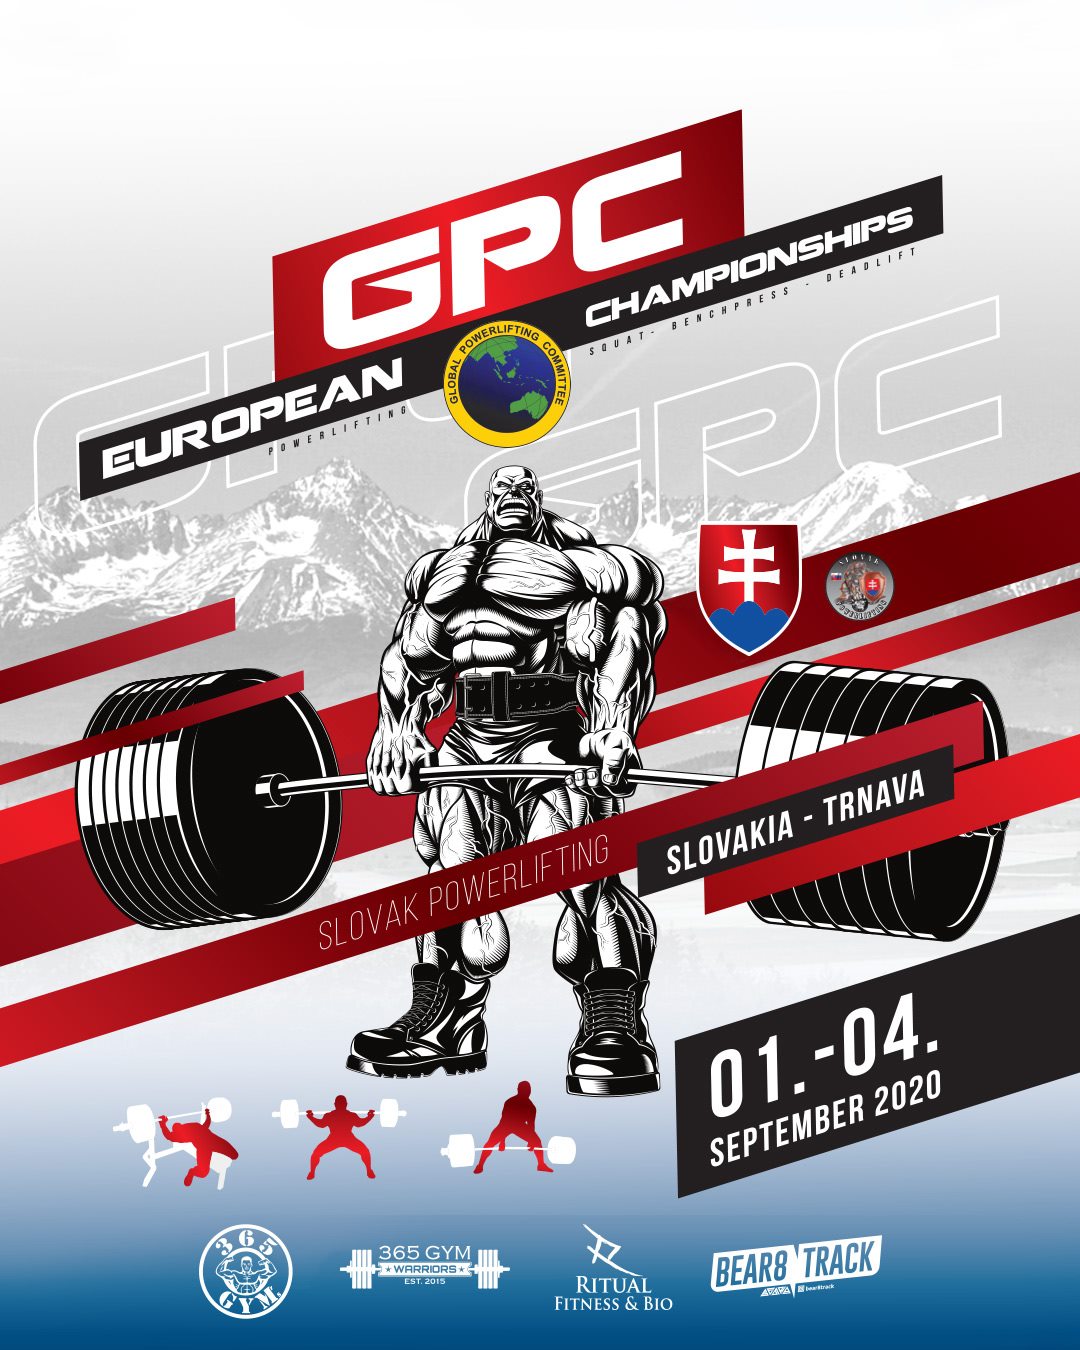 GPC European Championships 2020 Mestská športová hala Trnava